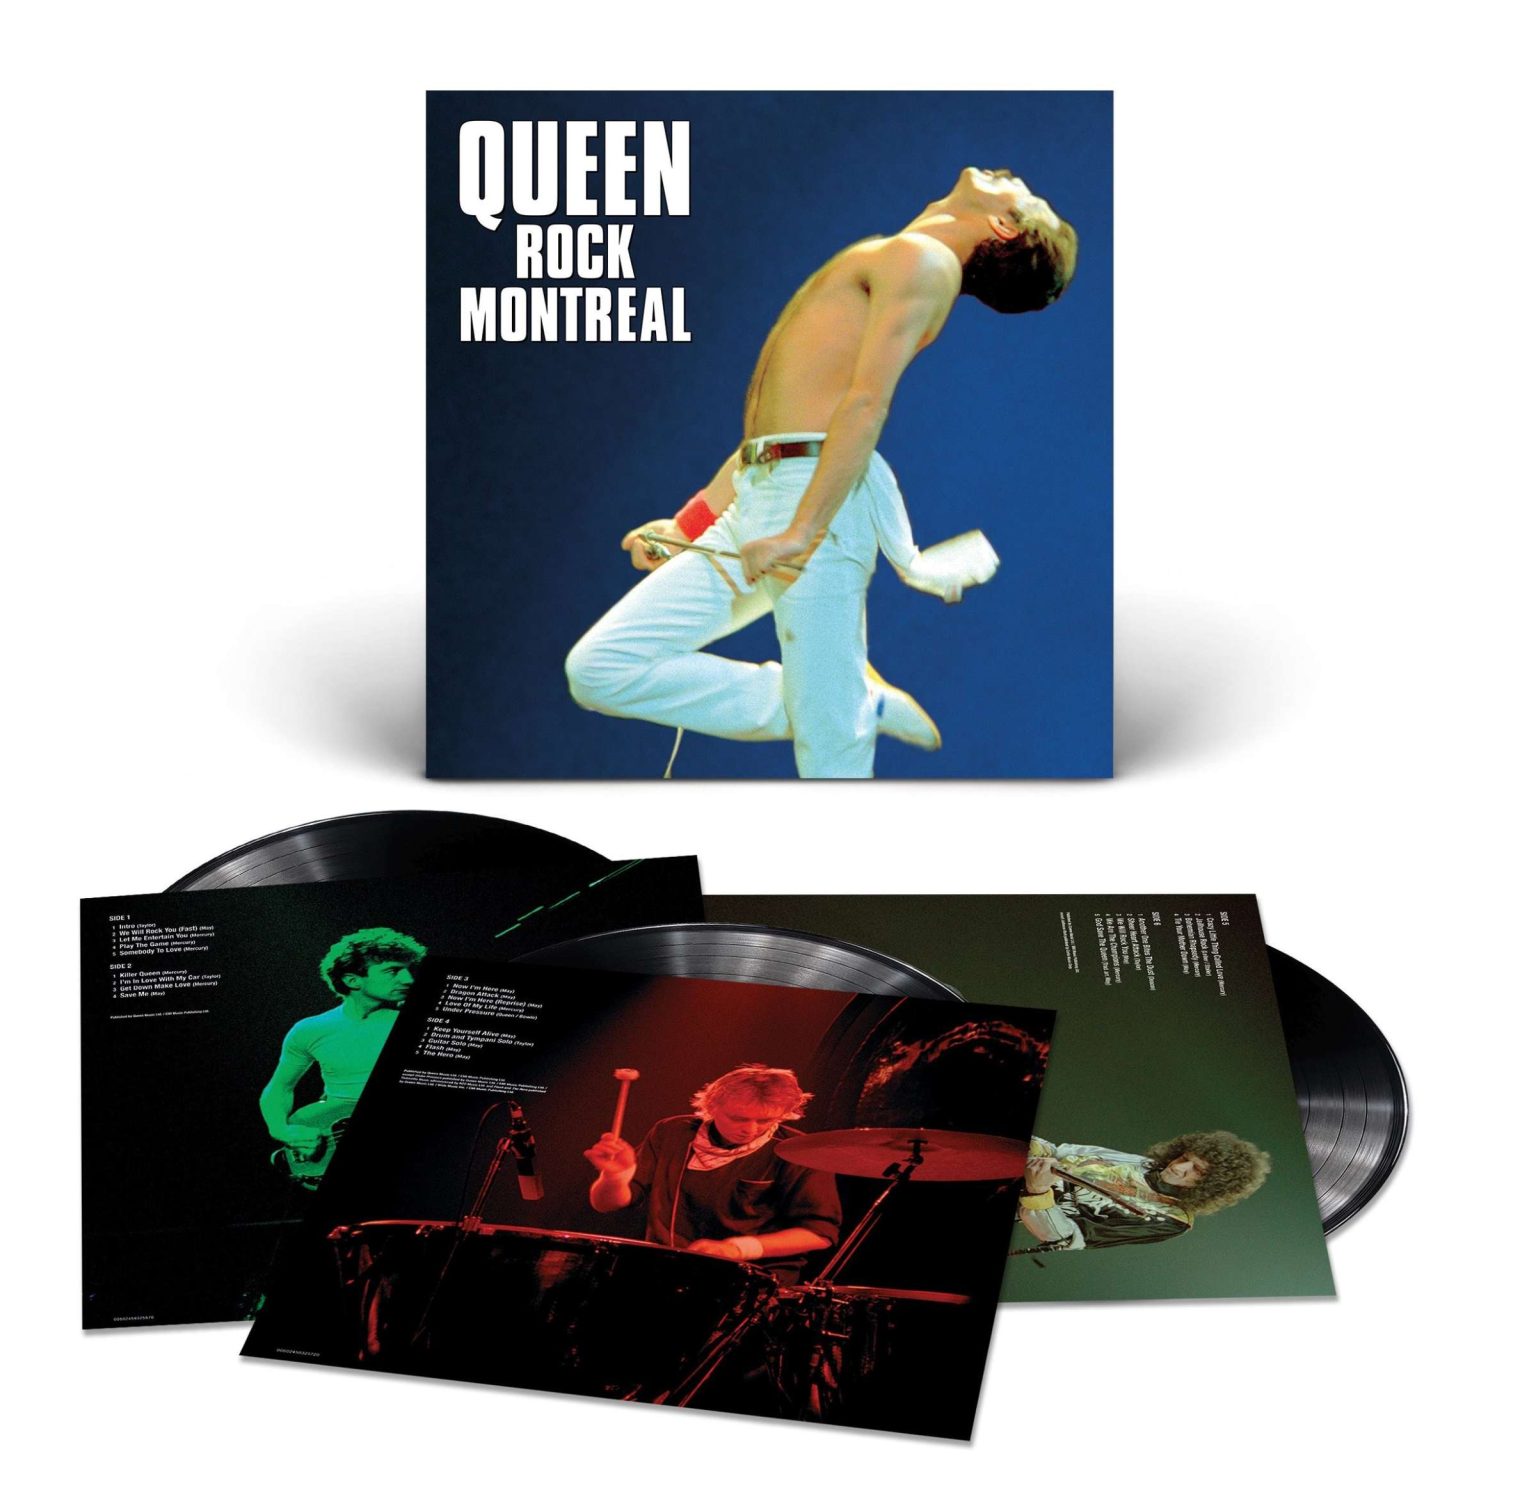 Okładka płyty winylowej artysty Queen o tytule Queen Rock Montreal